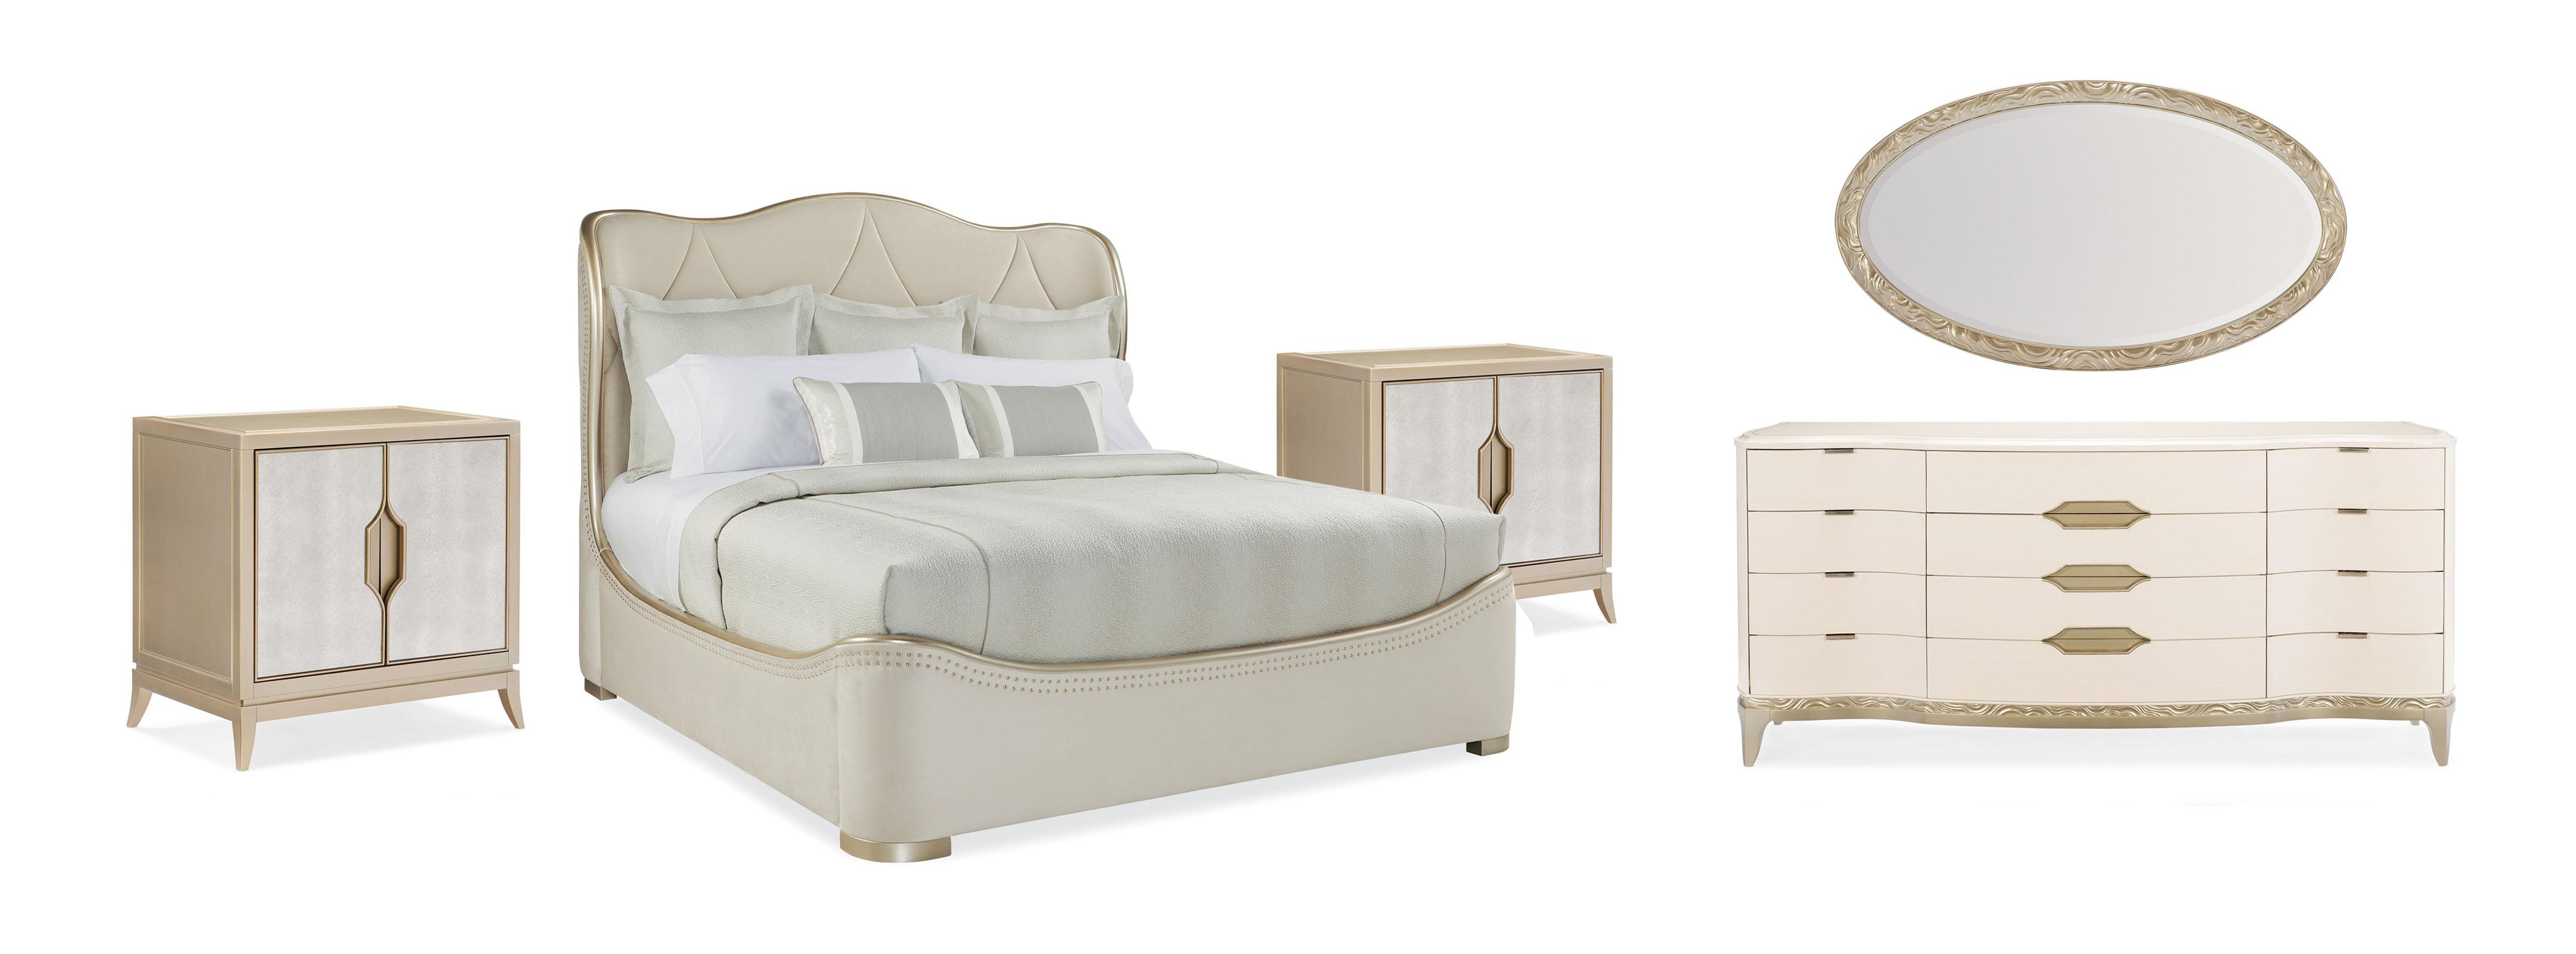 Contemporary Sleigh Bedroom Set ADELA KING BED / ADELA NIGHTSTAND / ADELA DRESSER / ADELA MIRROR C013-016-122-Set-5 in Cream Velvet